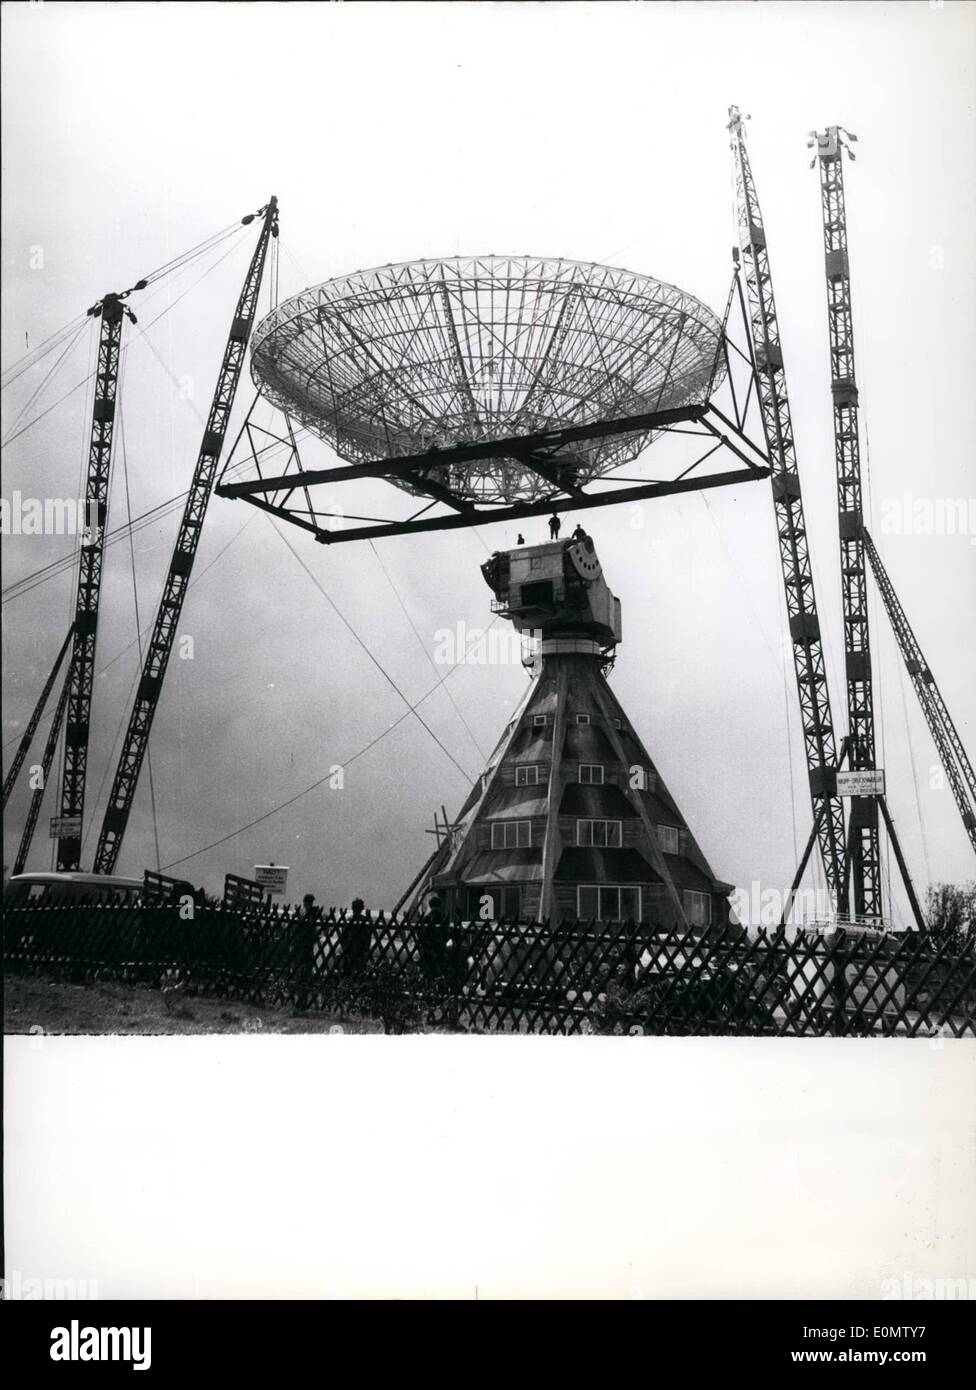 Septembre 09, 1956 - 25m miroir concave....du premier télescope radio allemande a été monté hier à Munstereifel. Malgré un temps orageux engineers ont risqué le montage. Photo montre le miroir géant jurst avant poussé vers le haut. Banque D'Images